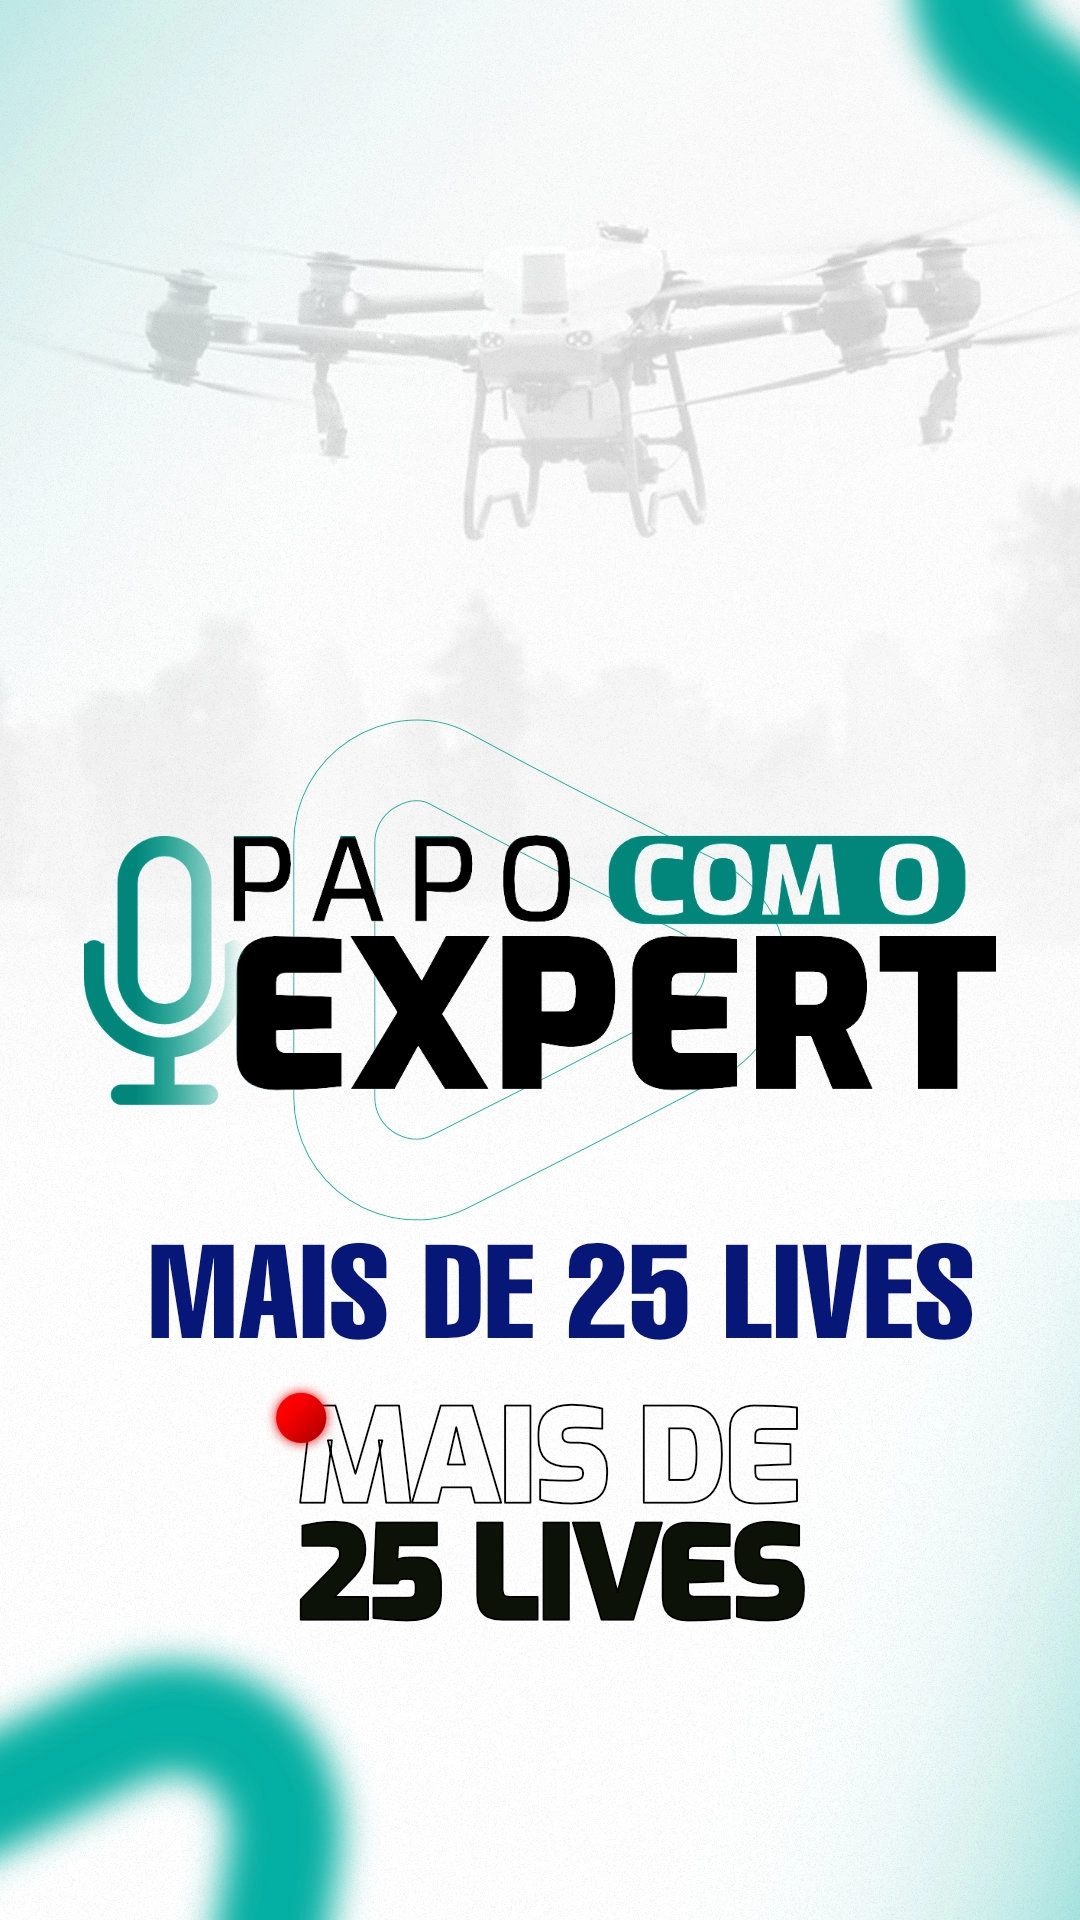 PAPO COM O EXPERT - MAIS DE 25 LIVES